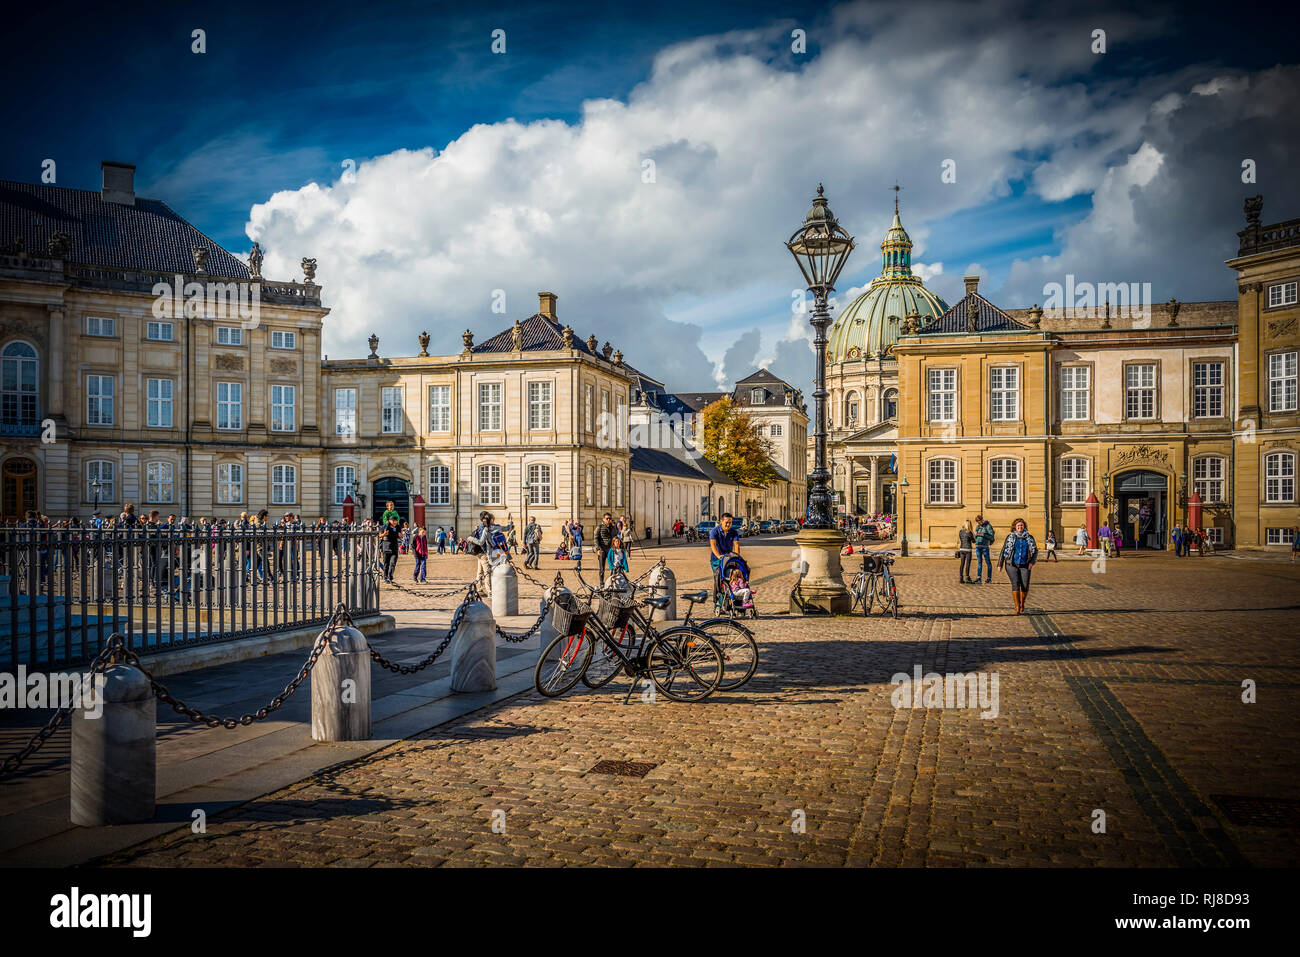 Europa, Dänemark, Kopenhagen, Schloss Amalienborg, Marmorkirche Foto Stock